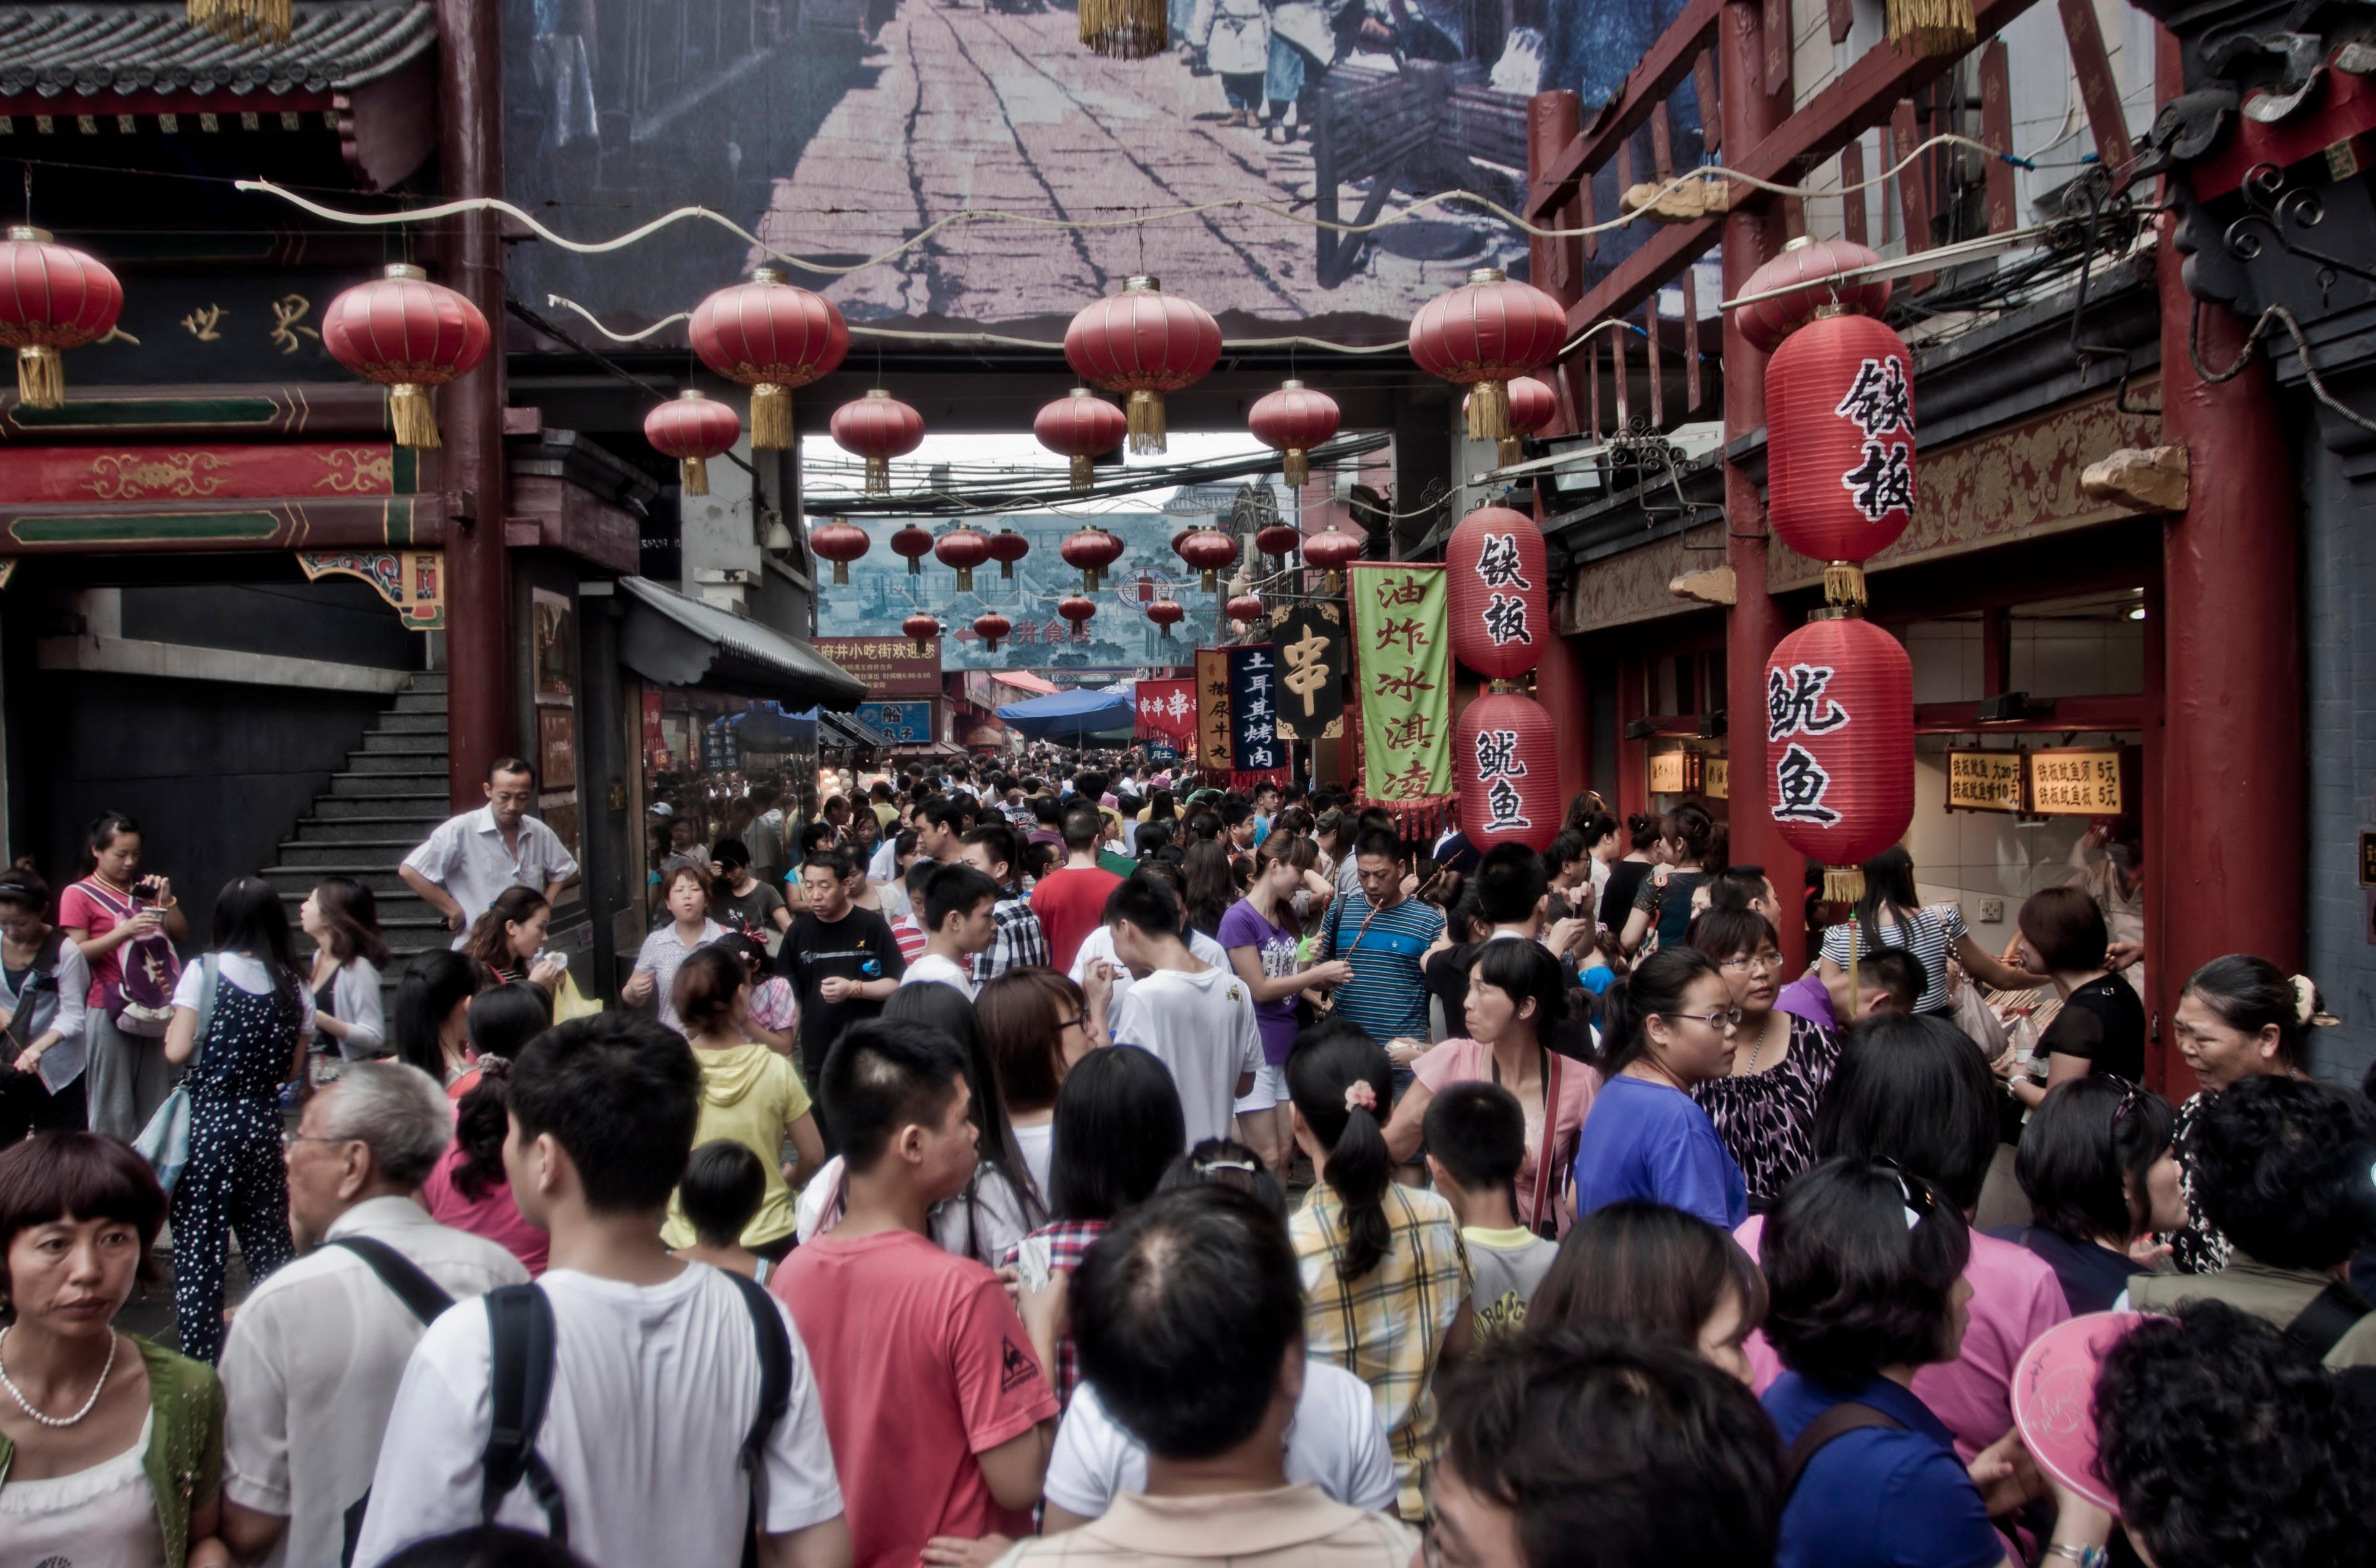 Kina će za deset godina imati 1,44 milijarde stanovnika